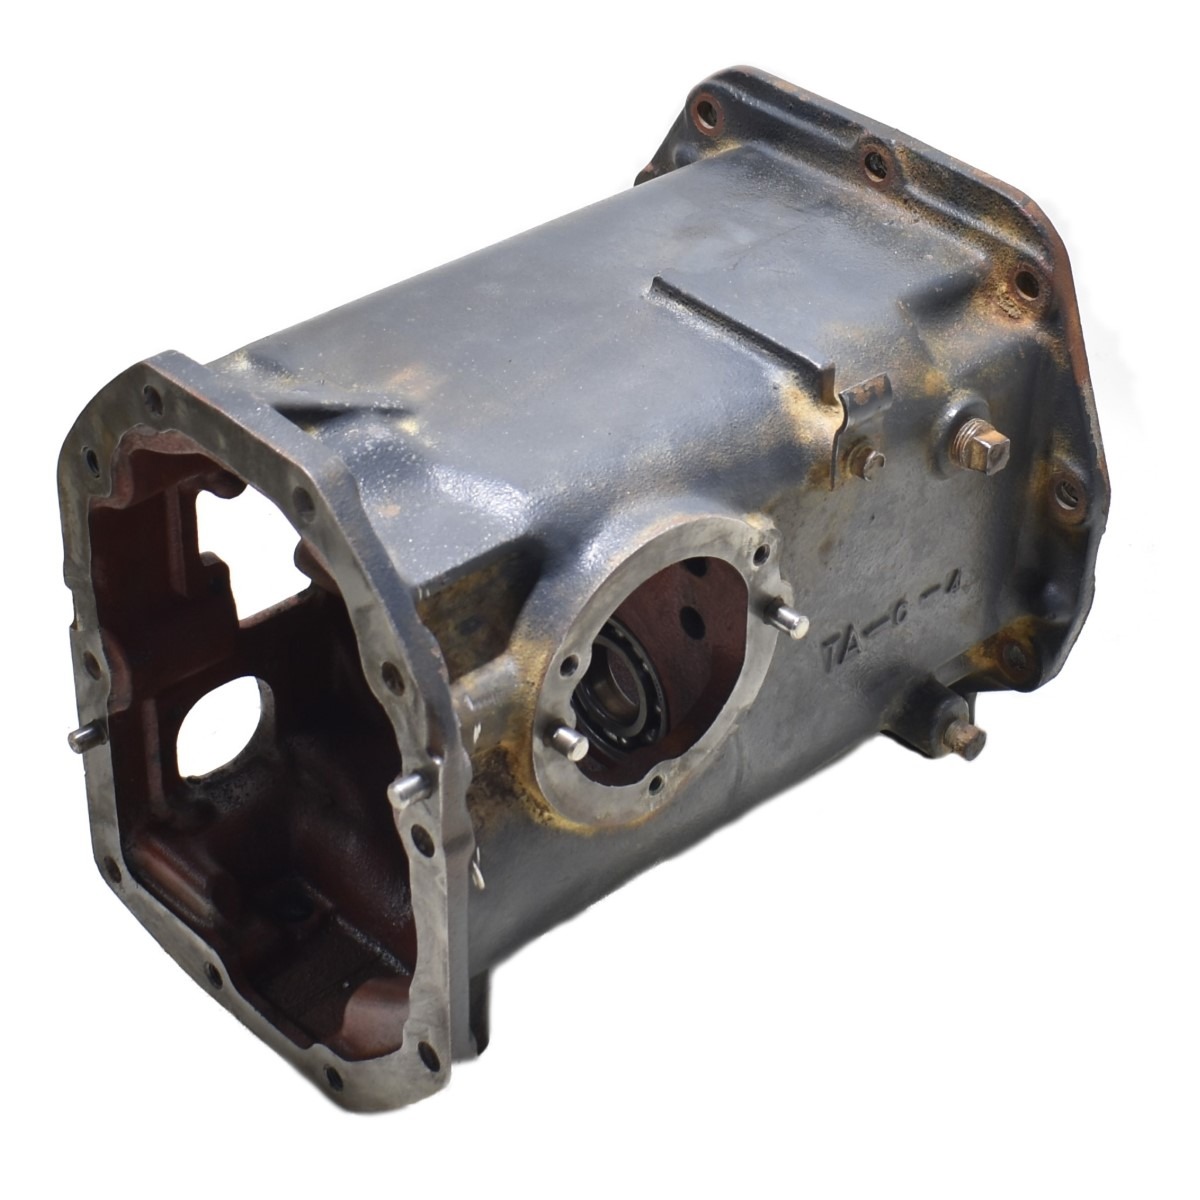 Behuizing versnellingsbak achterbrug gearbox Iseki TA230 landleader Origineel onderdeel nummer: 1560-230-001-70 1560-230-0017-0 156023000170 1560-230-001-80 1560-230-0018-0 156023000180